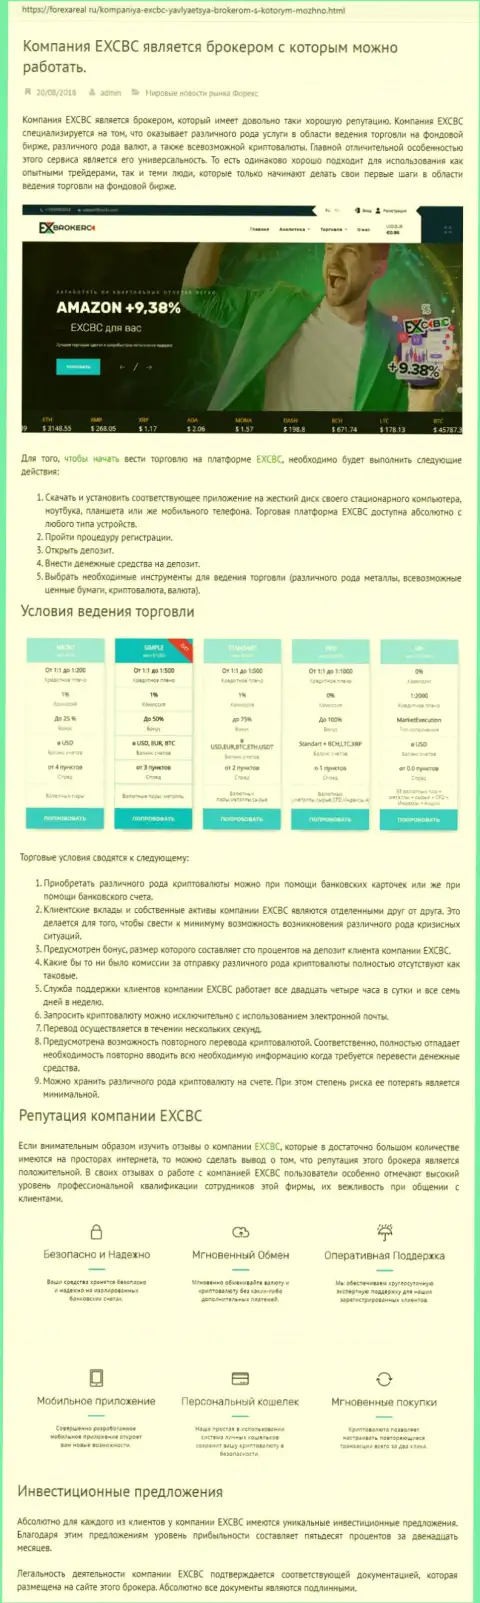 Информационный сервис forexareal ru выложил обзор форекс дилингового центра EXCBC